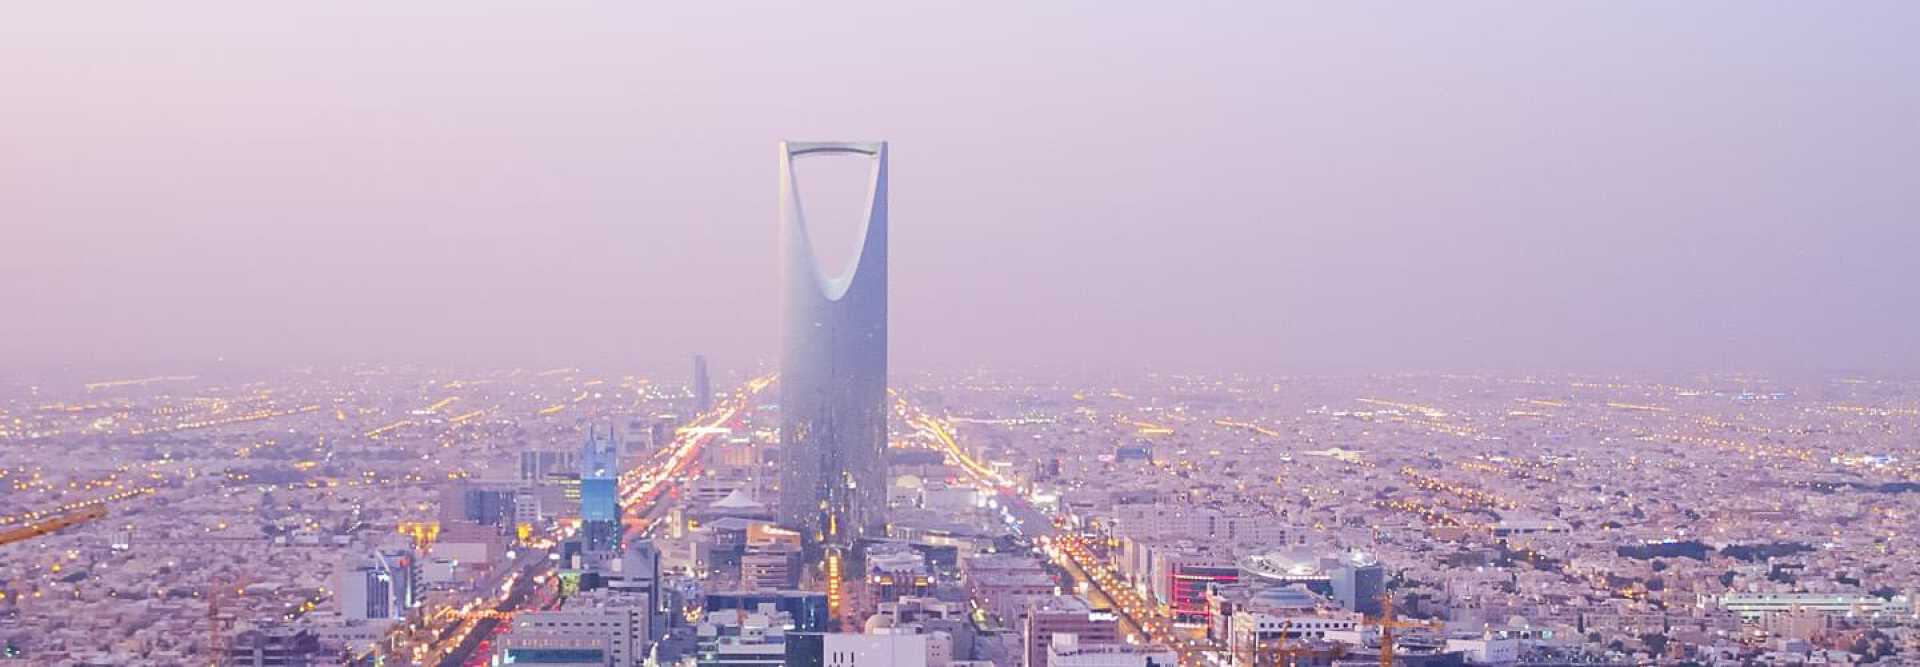 Coucher de soleil à Riyad en Arabie saoudite, avec vue sur la tour du royaume.